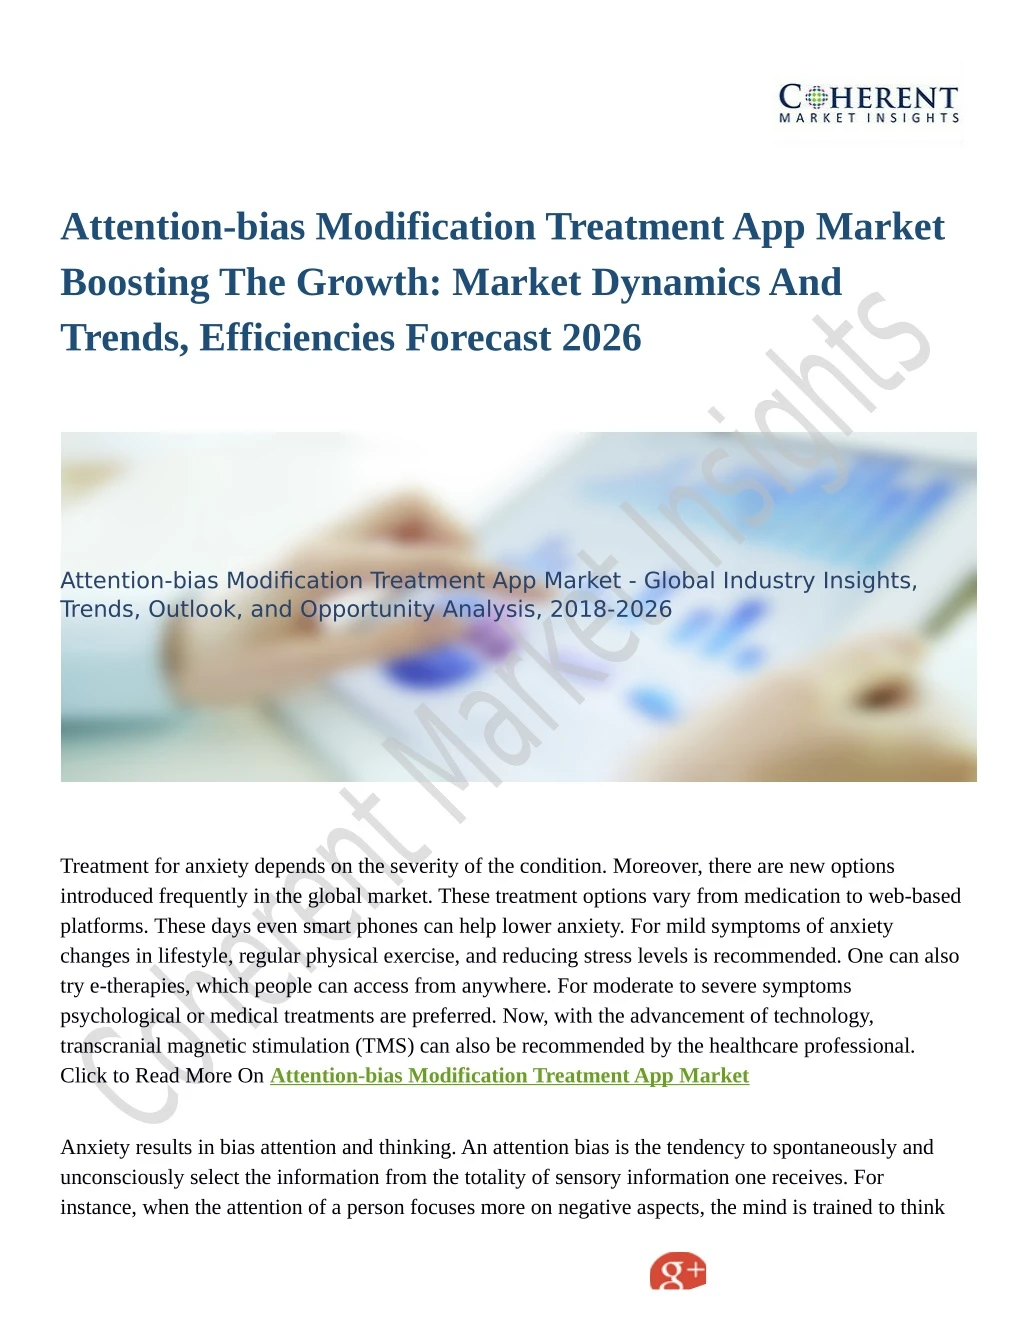 attention bias modification treatment app market